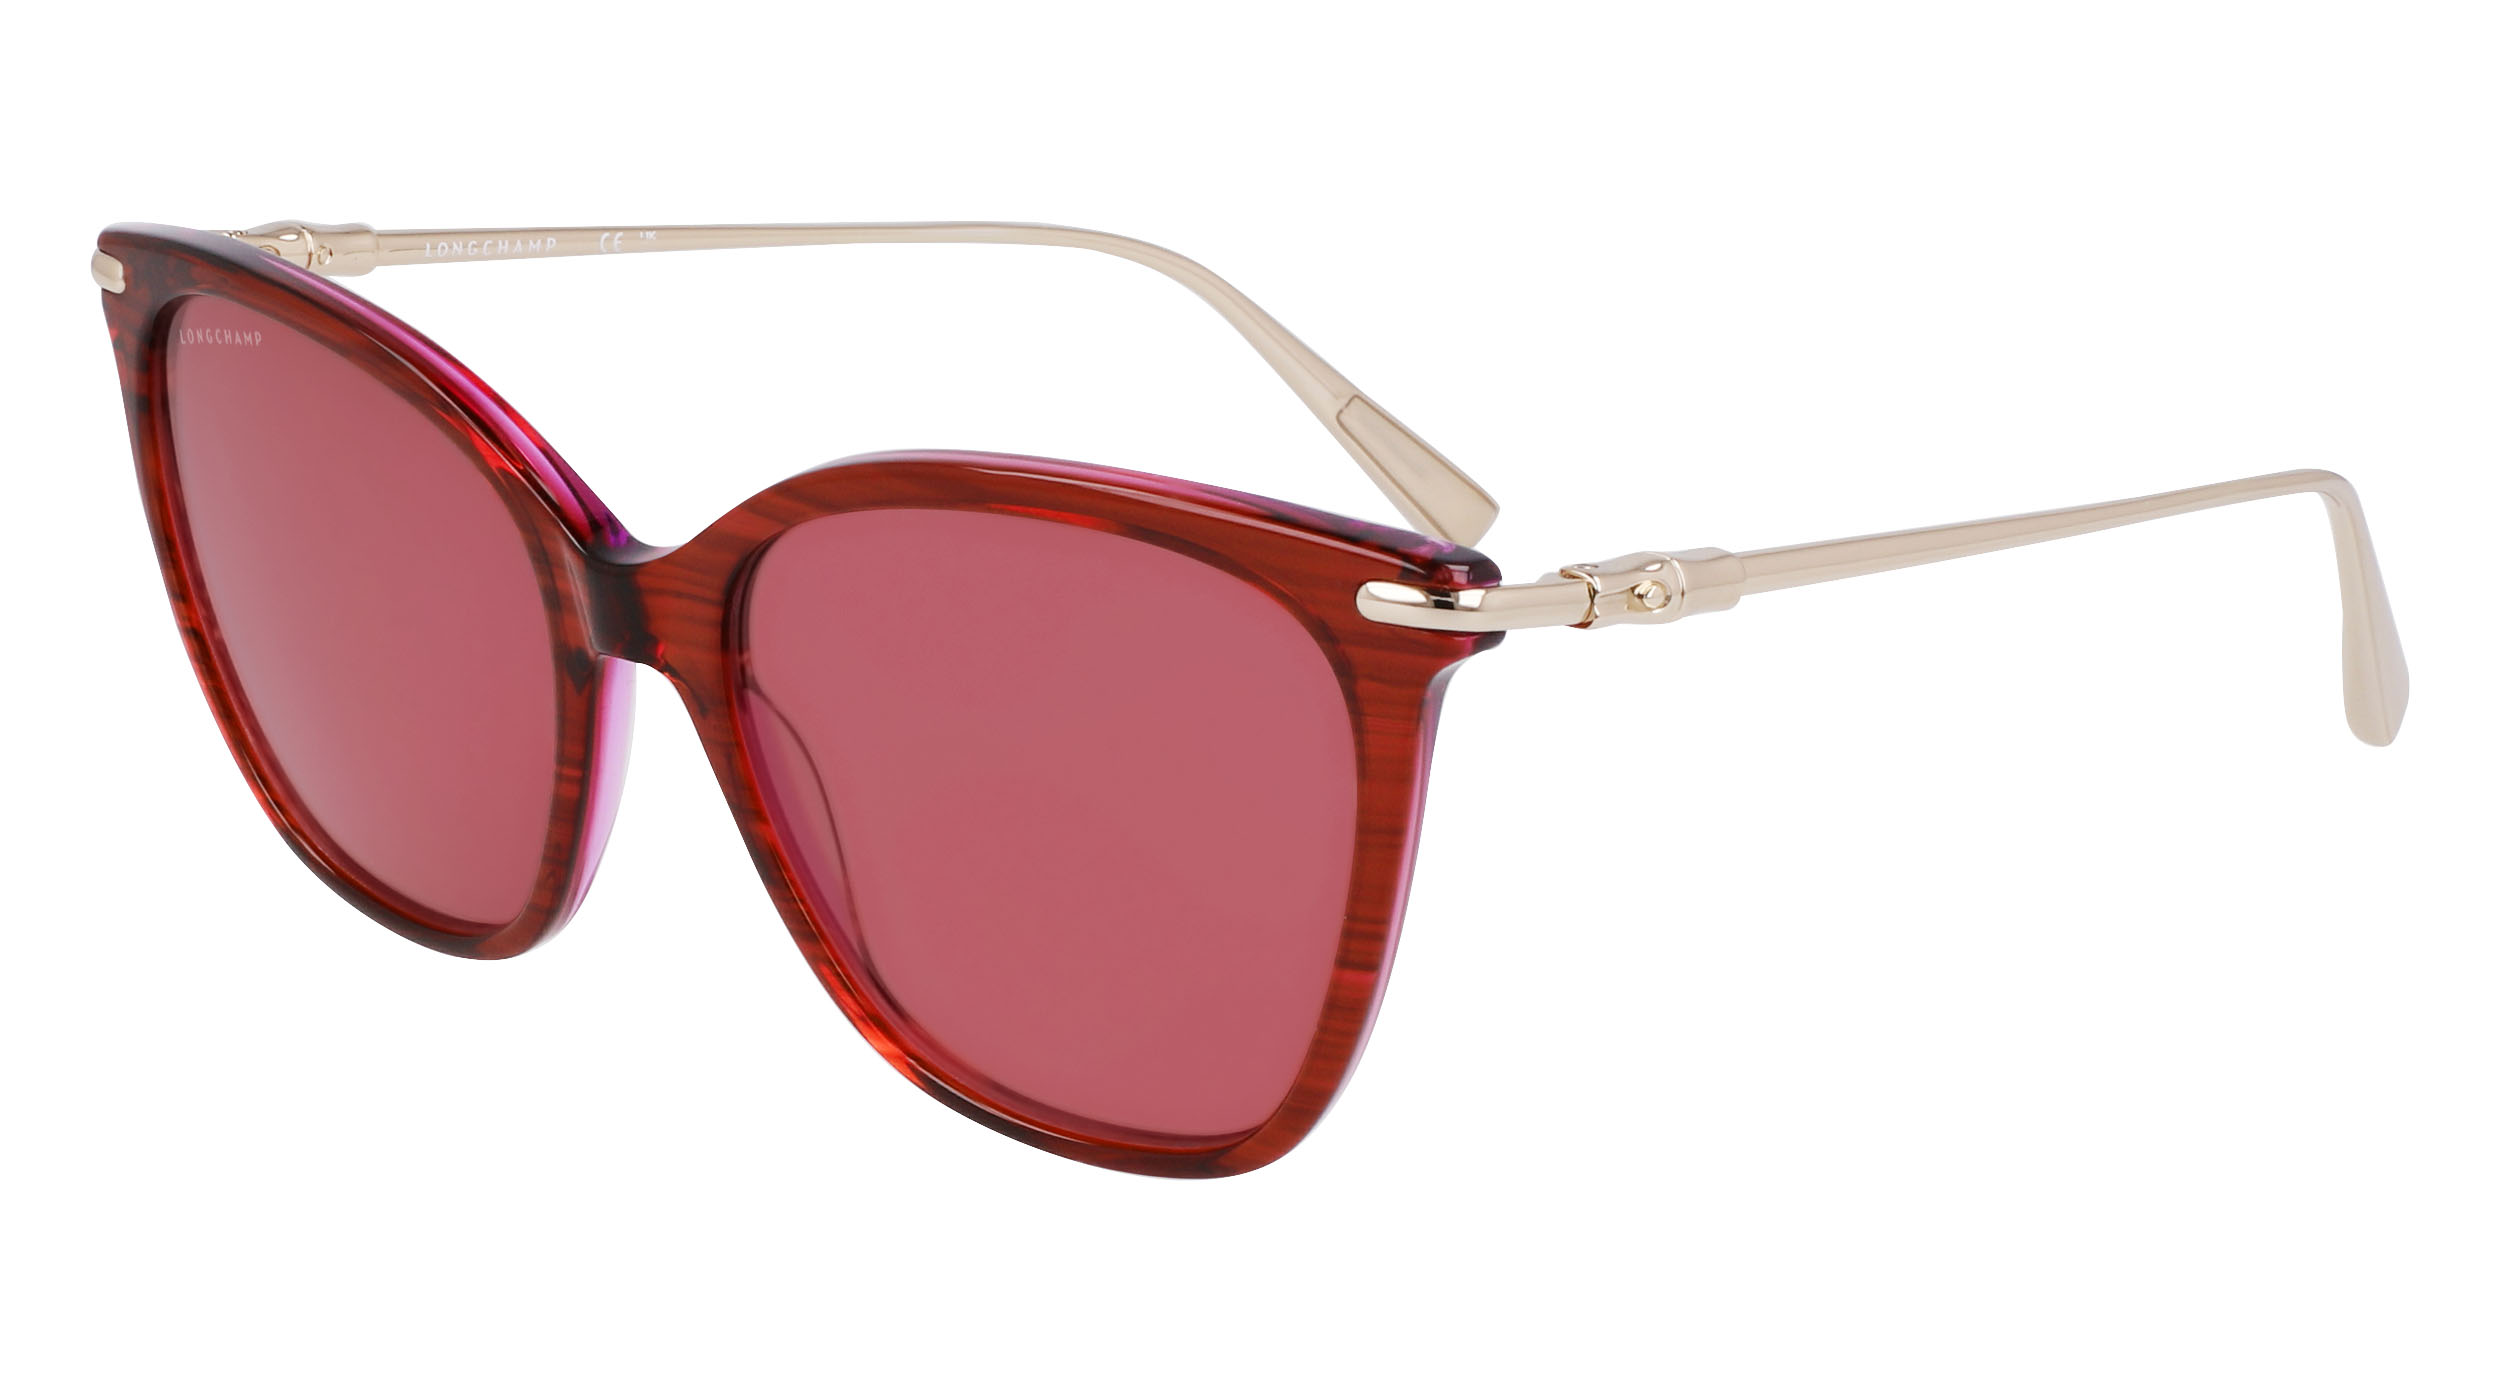 Sunglasses Longchamp Lo757s, pink colour - Doyle